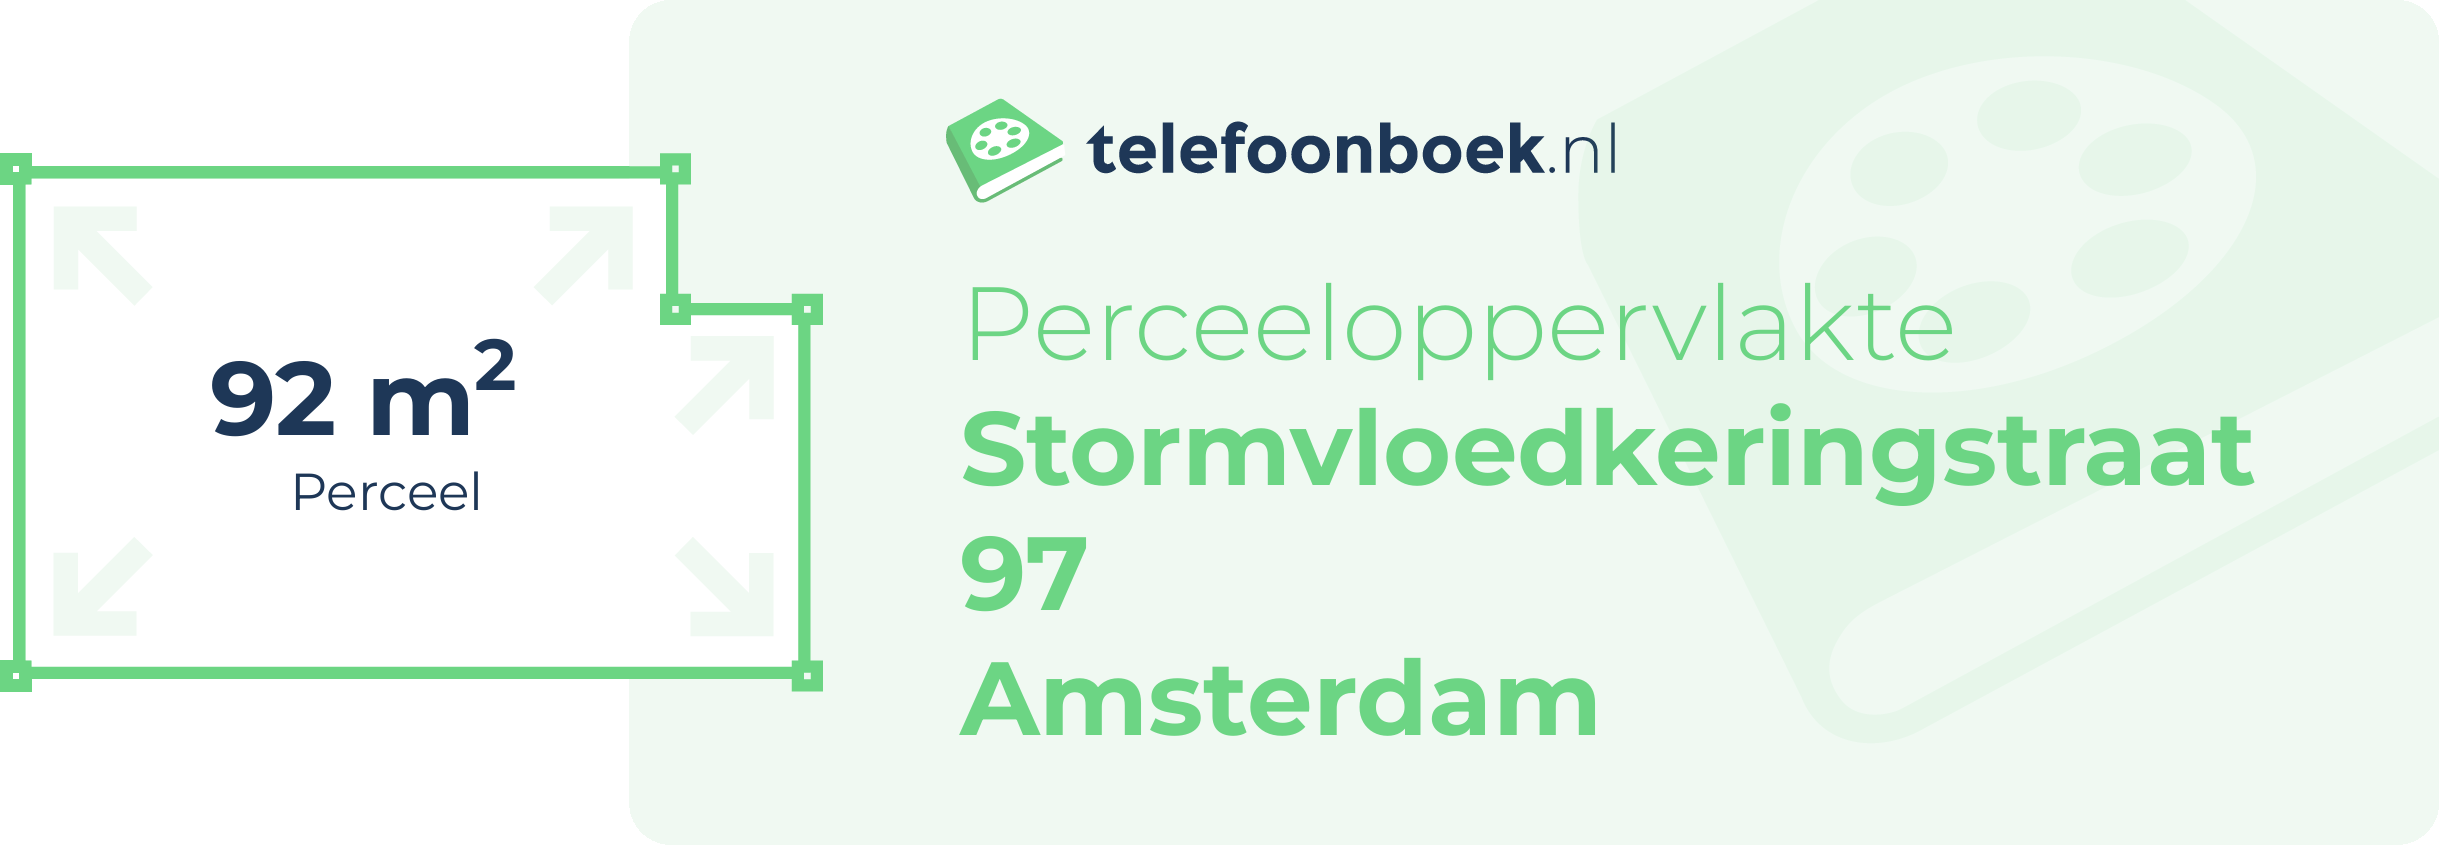 Perceeloppervlakte Stormvloedkeringstraat 97 Amsterdam